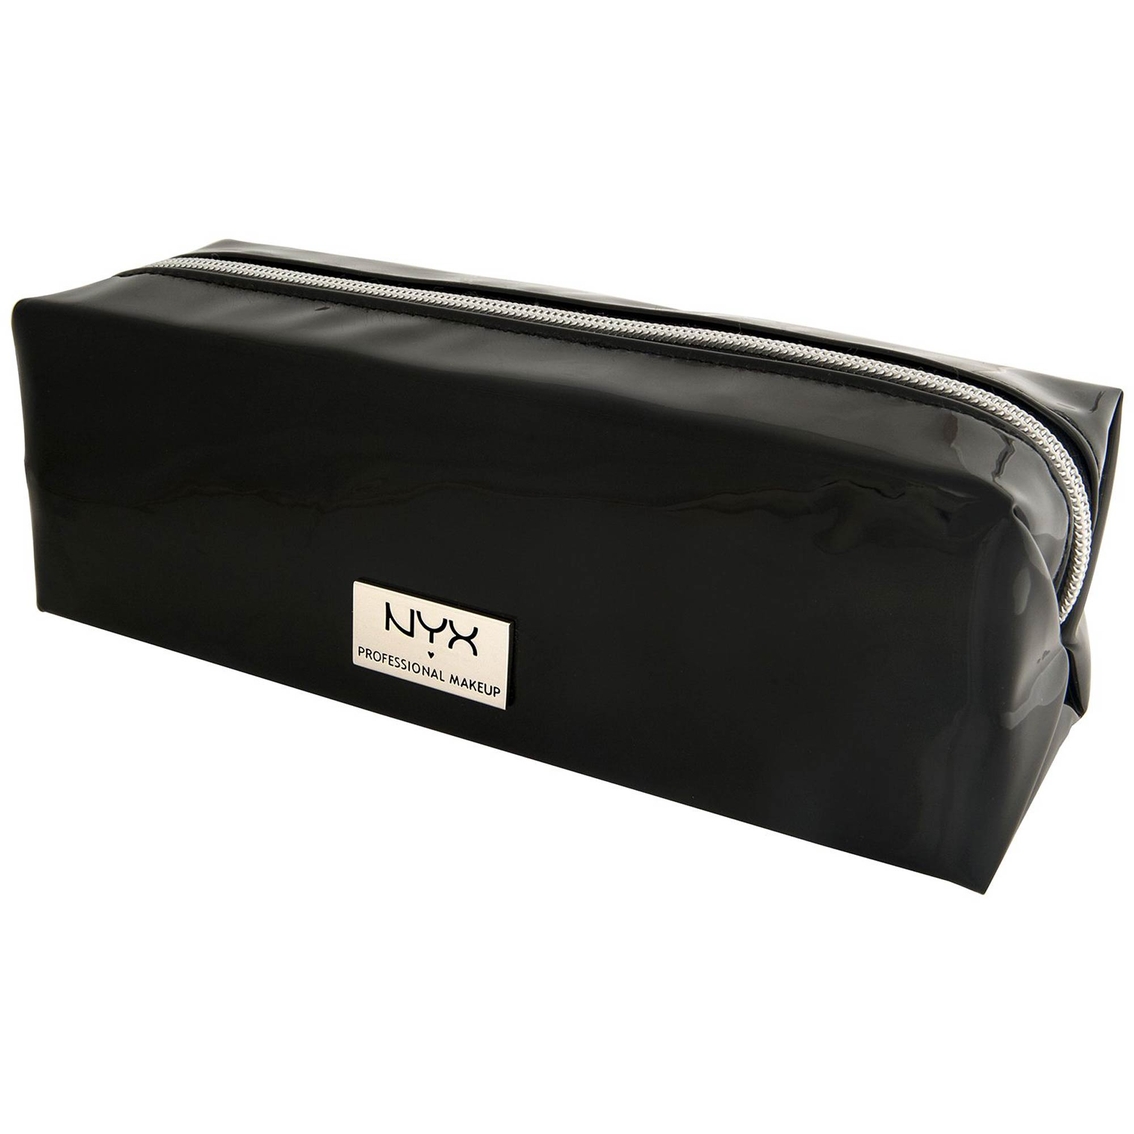 Nyx Professional Makeup - Large Vinyl Zipper Makeup Bag